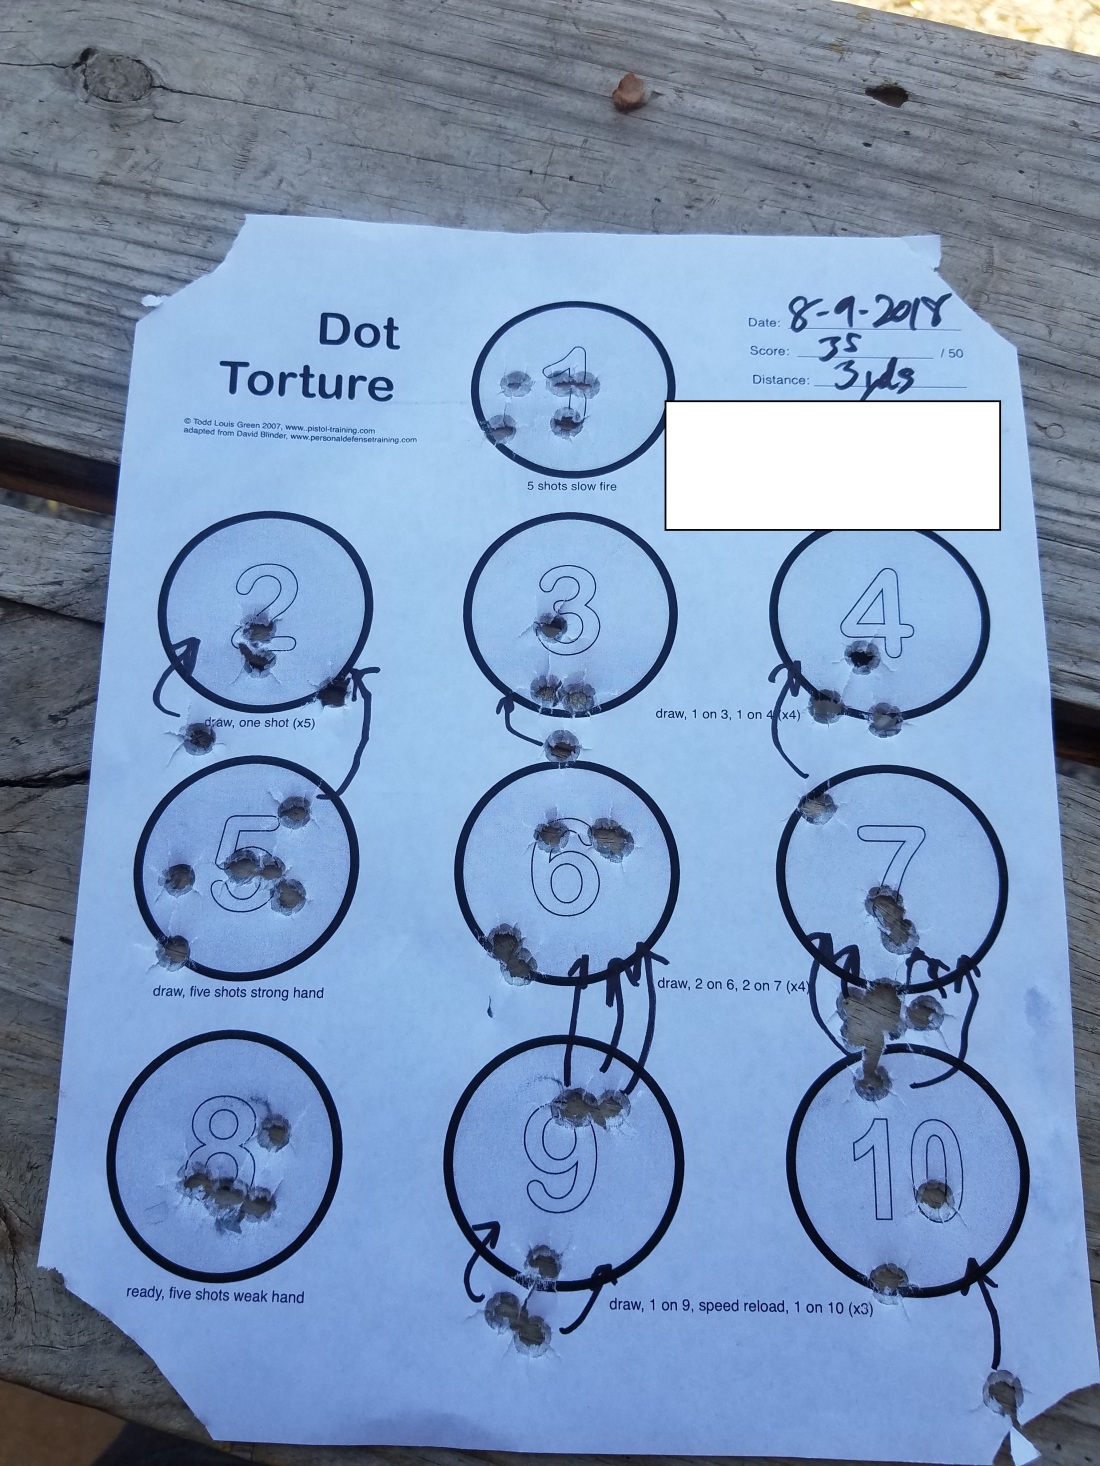 Dot torture 8-9-2018